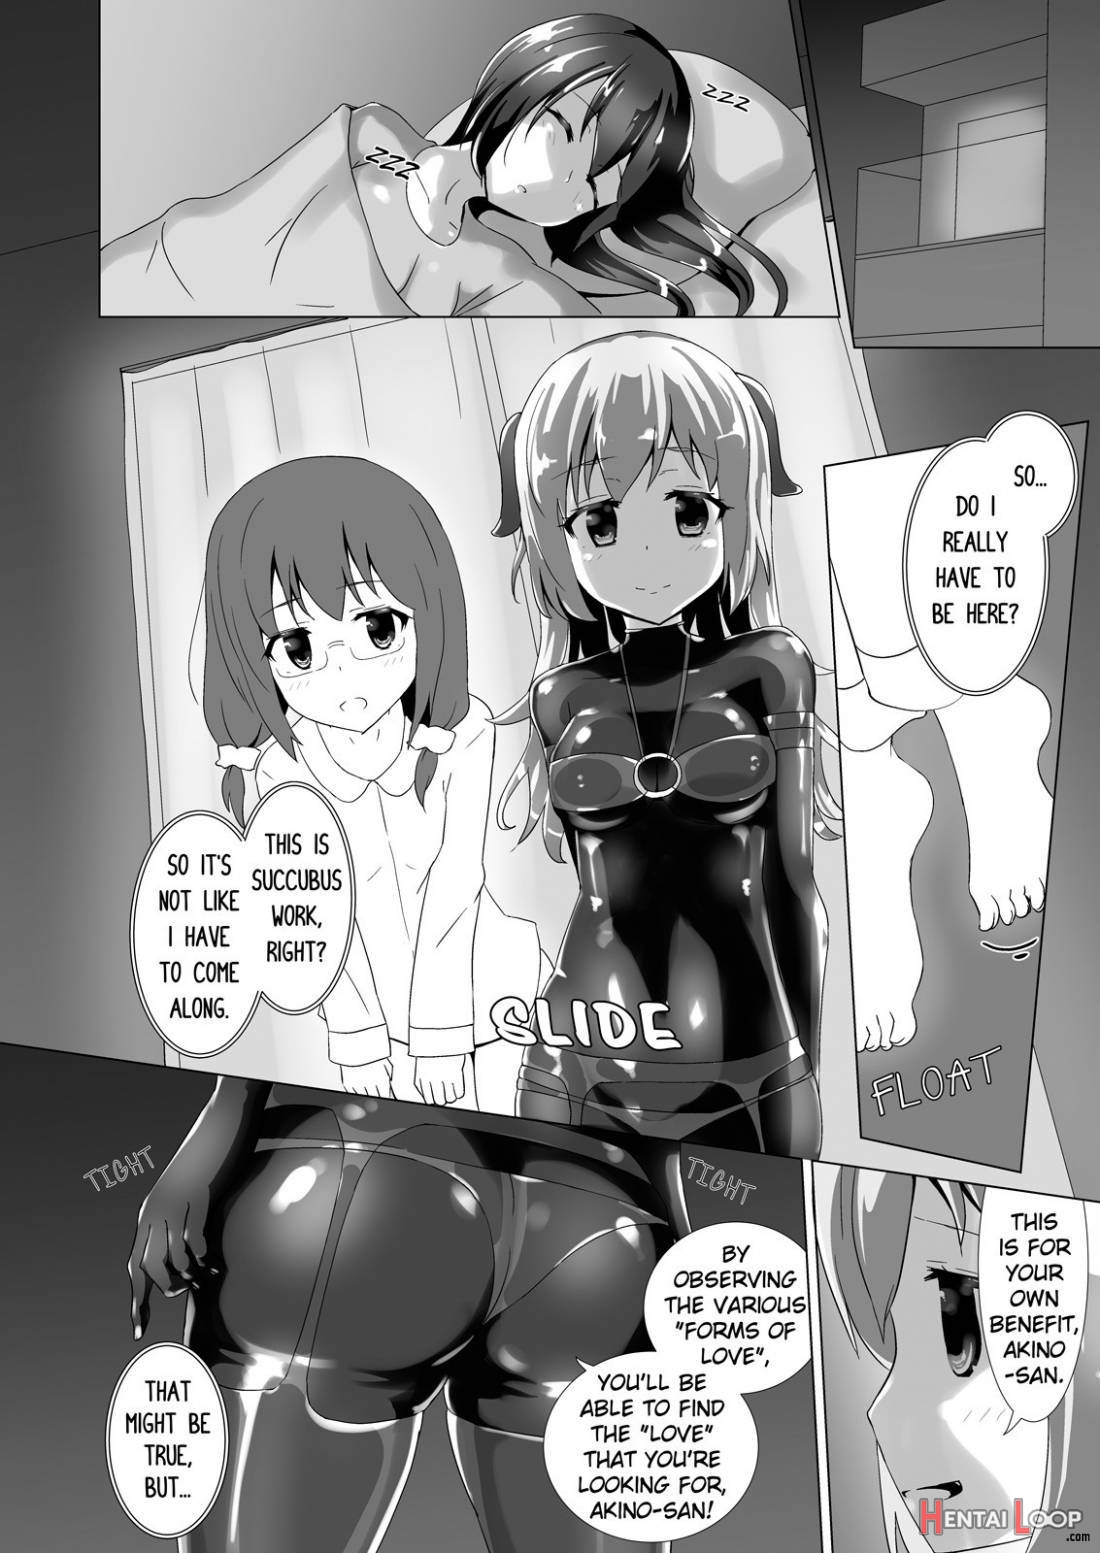 Yumewatari no Mistress Night 2 page 6